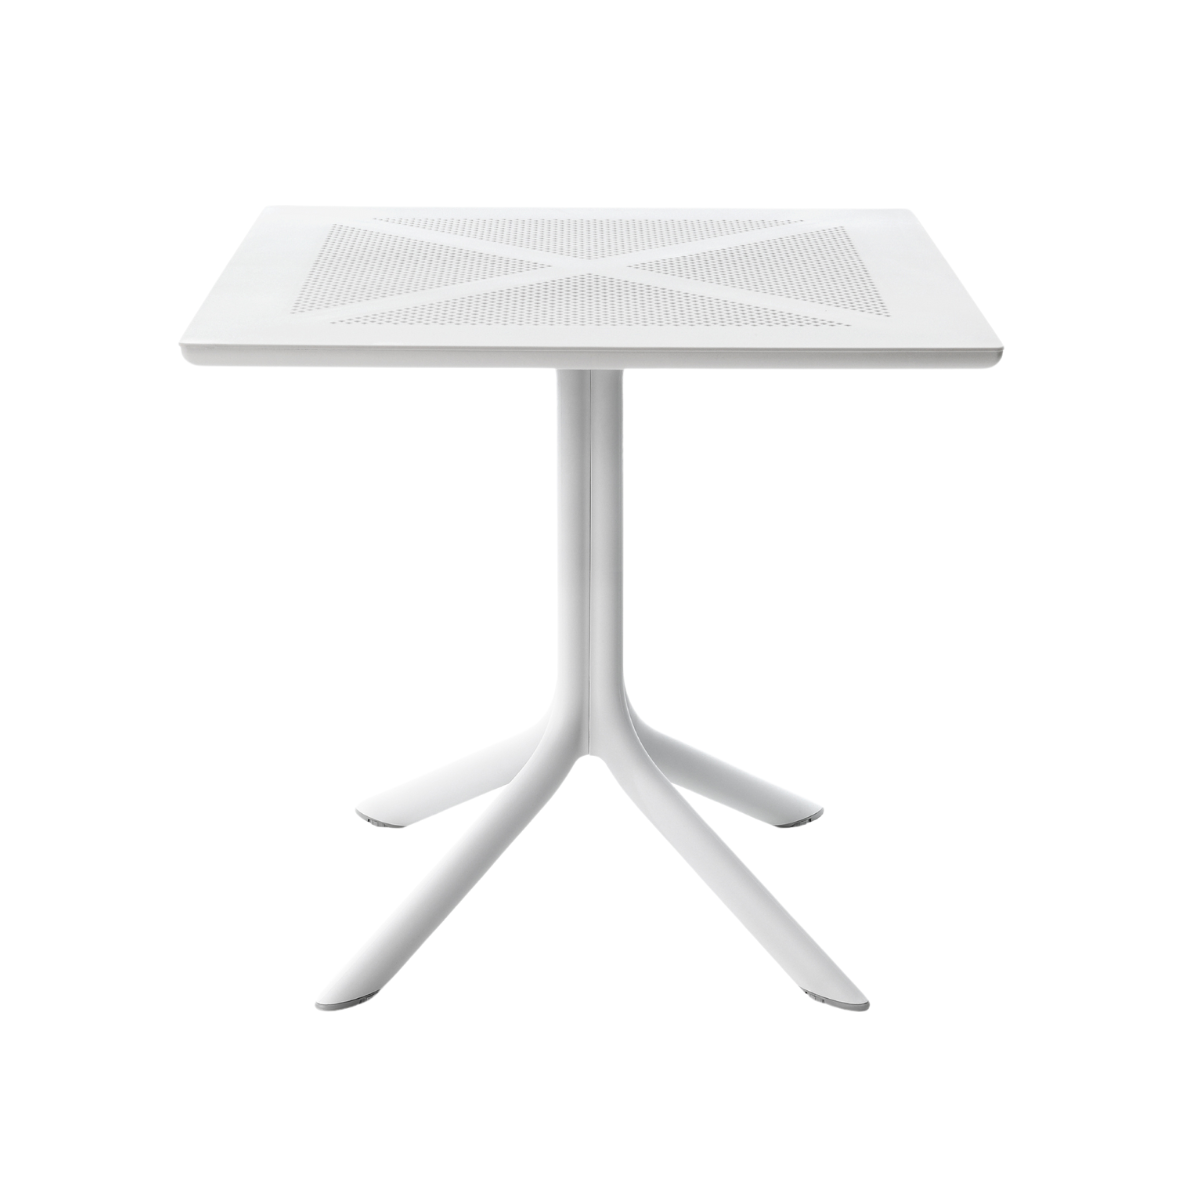 NARDI CLIPX 80 Fehér modern Kültéri komplett asztal